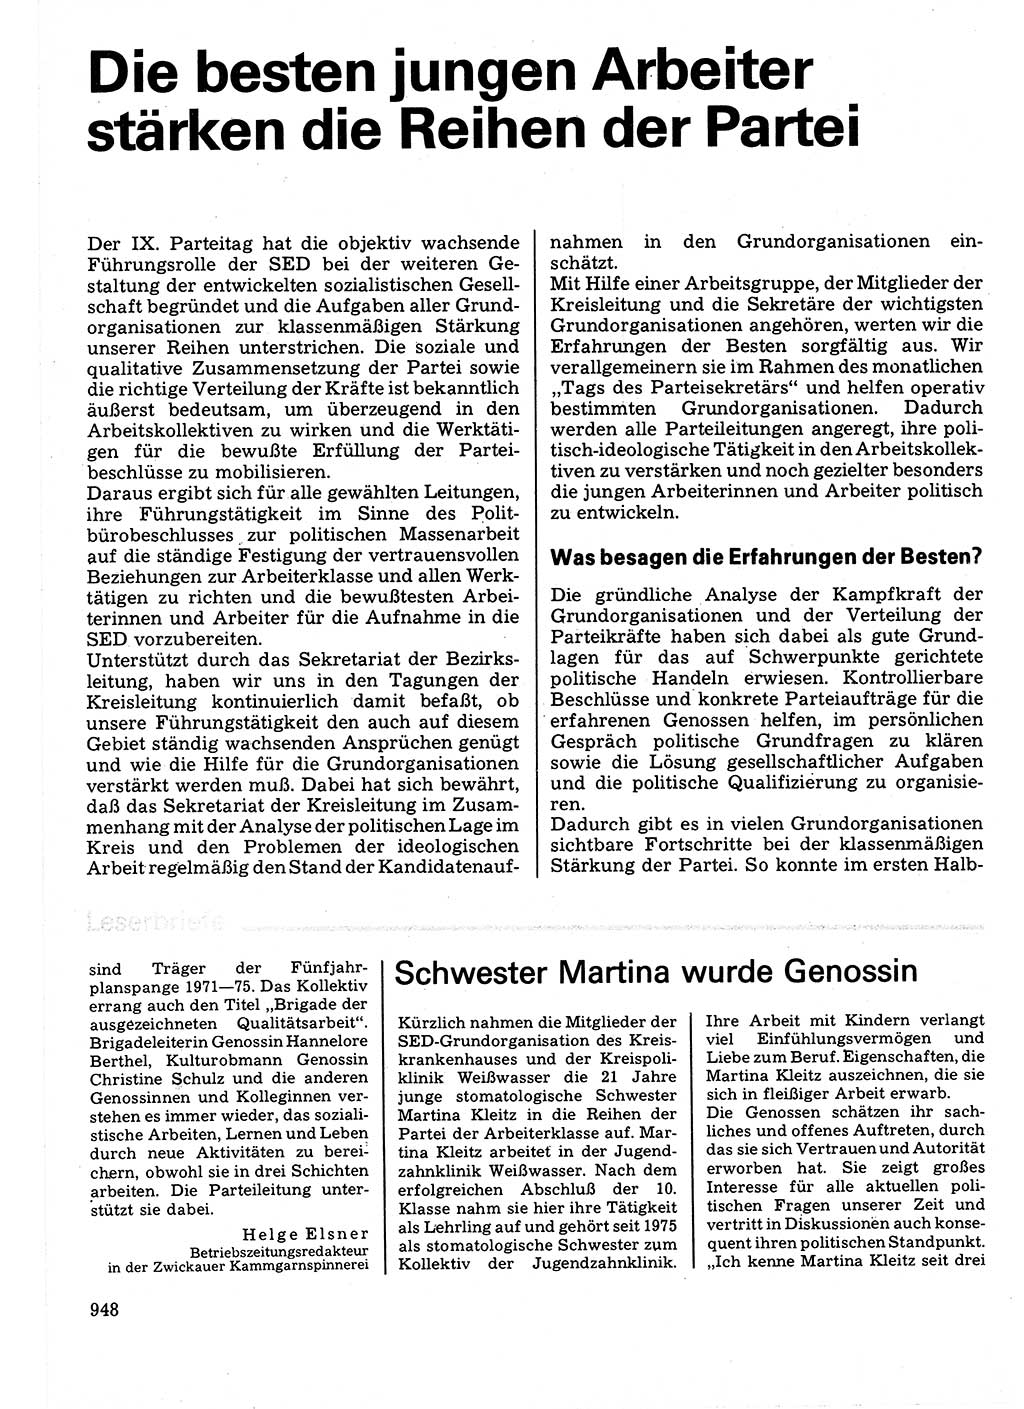 Neuer Weg (NW), Organ des Zentralkomitees (ZK) der SED (Sozialistische Einheitspartei Deutschlands) für Fragen des Parteilebens, 32. Jahrgang [Deutsche Demokratische Republik (DDR)] 1977, Seite 948 (NW ZK SED DDR 1977, S. 948)